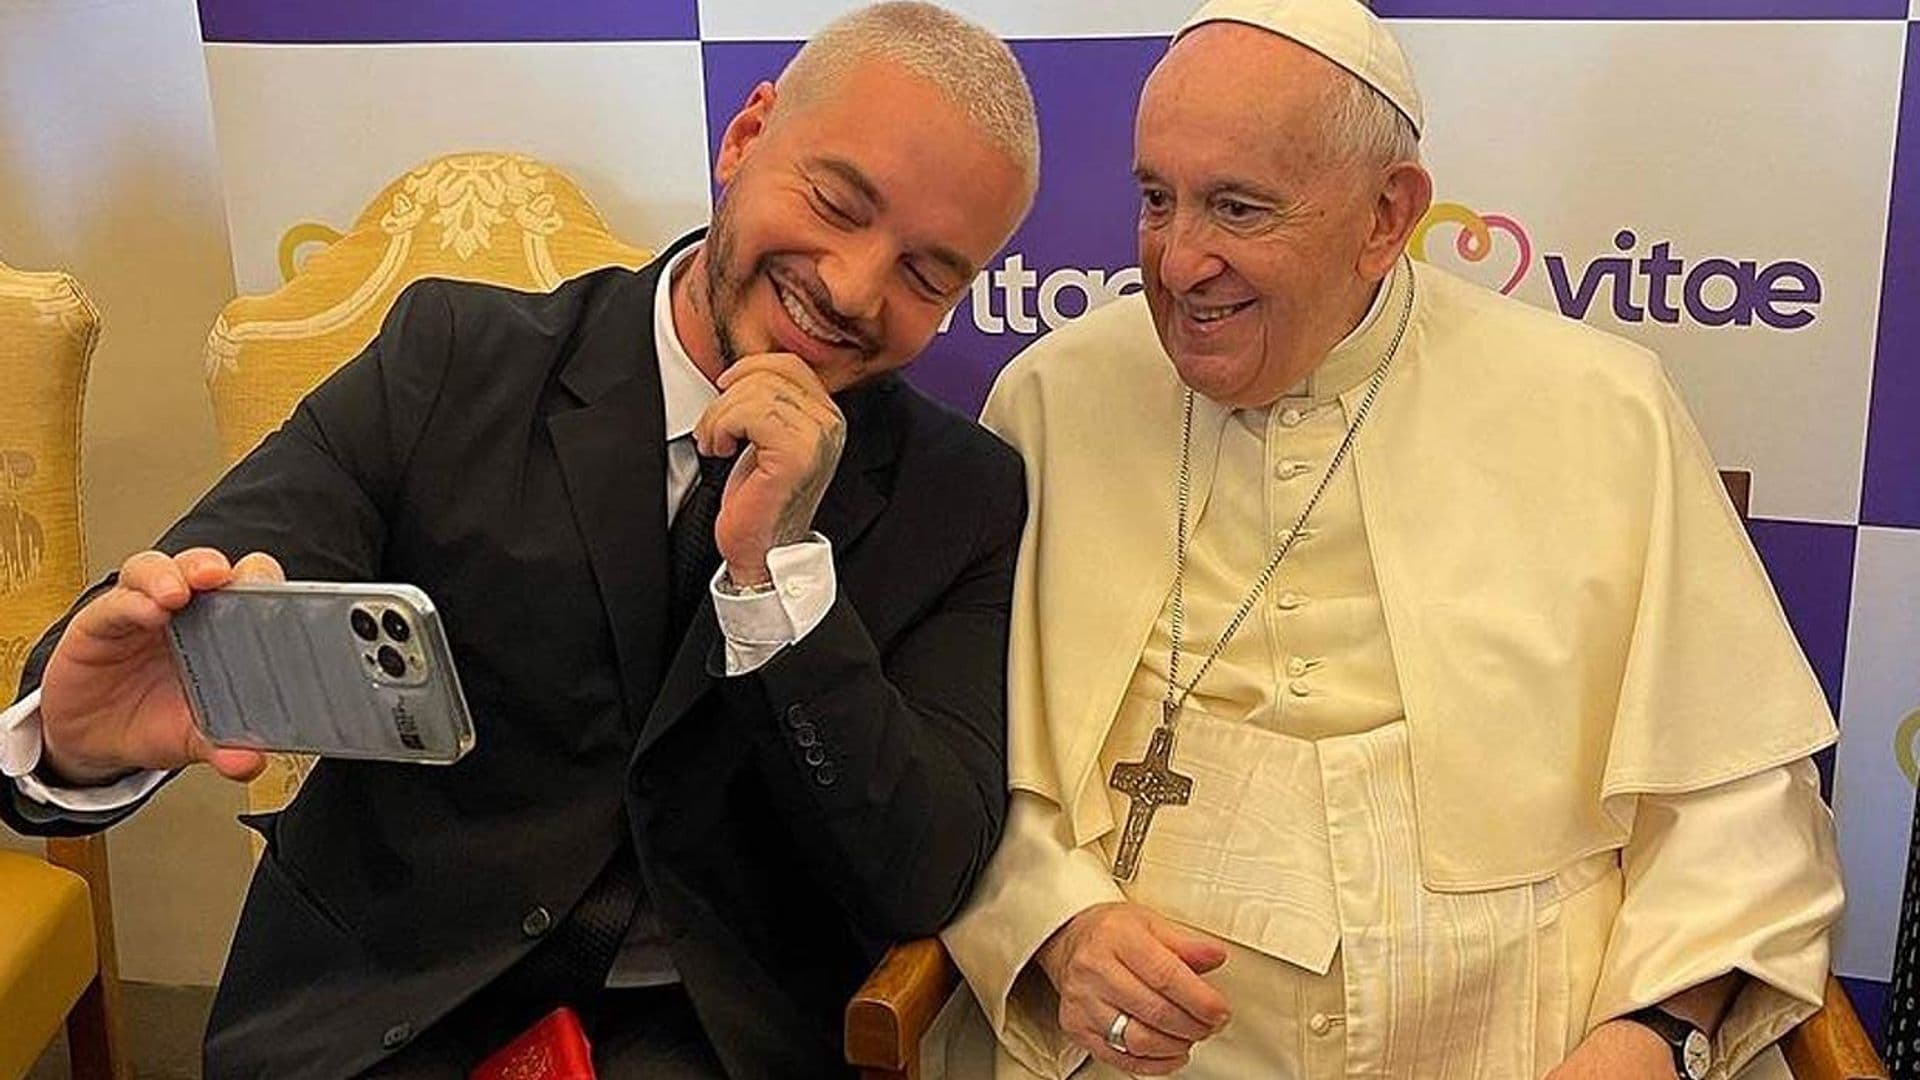 ¡Mira que eres travieso! El divertido encuentro entre el Papa Francisco y J Balvin